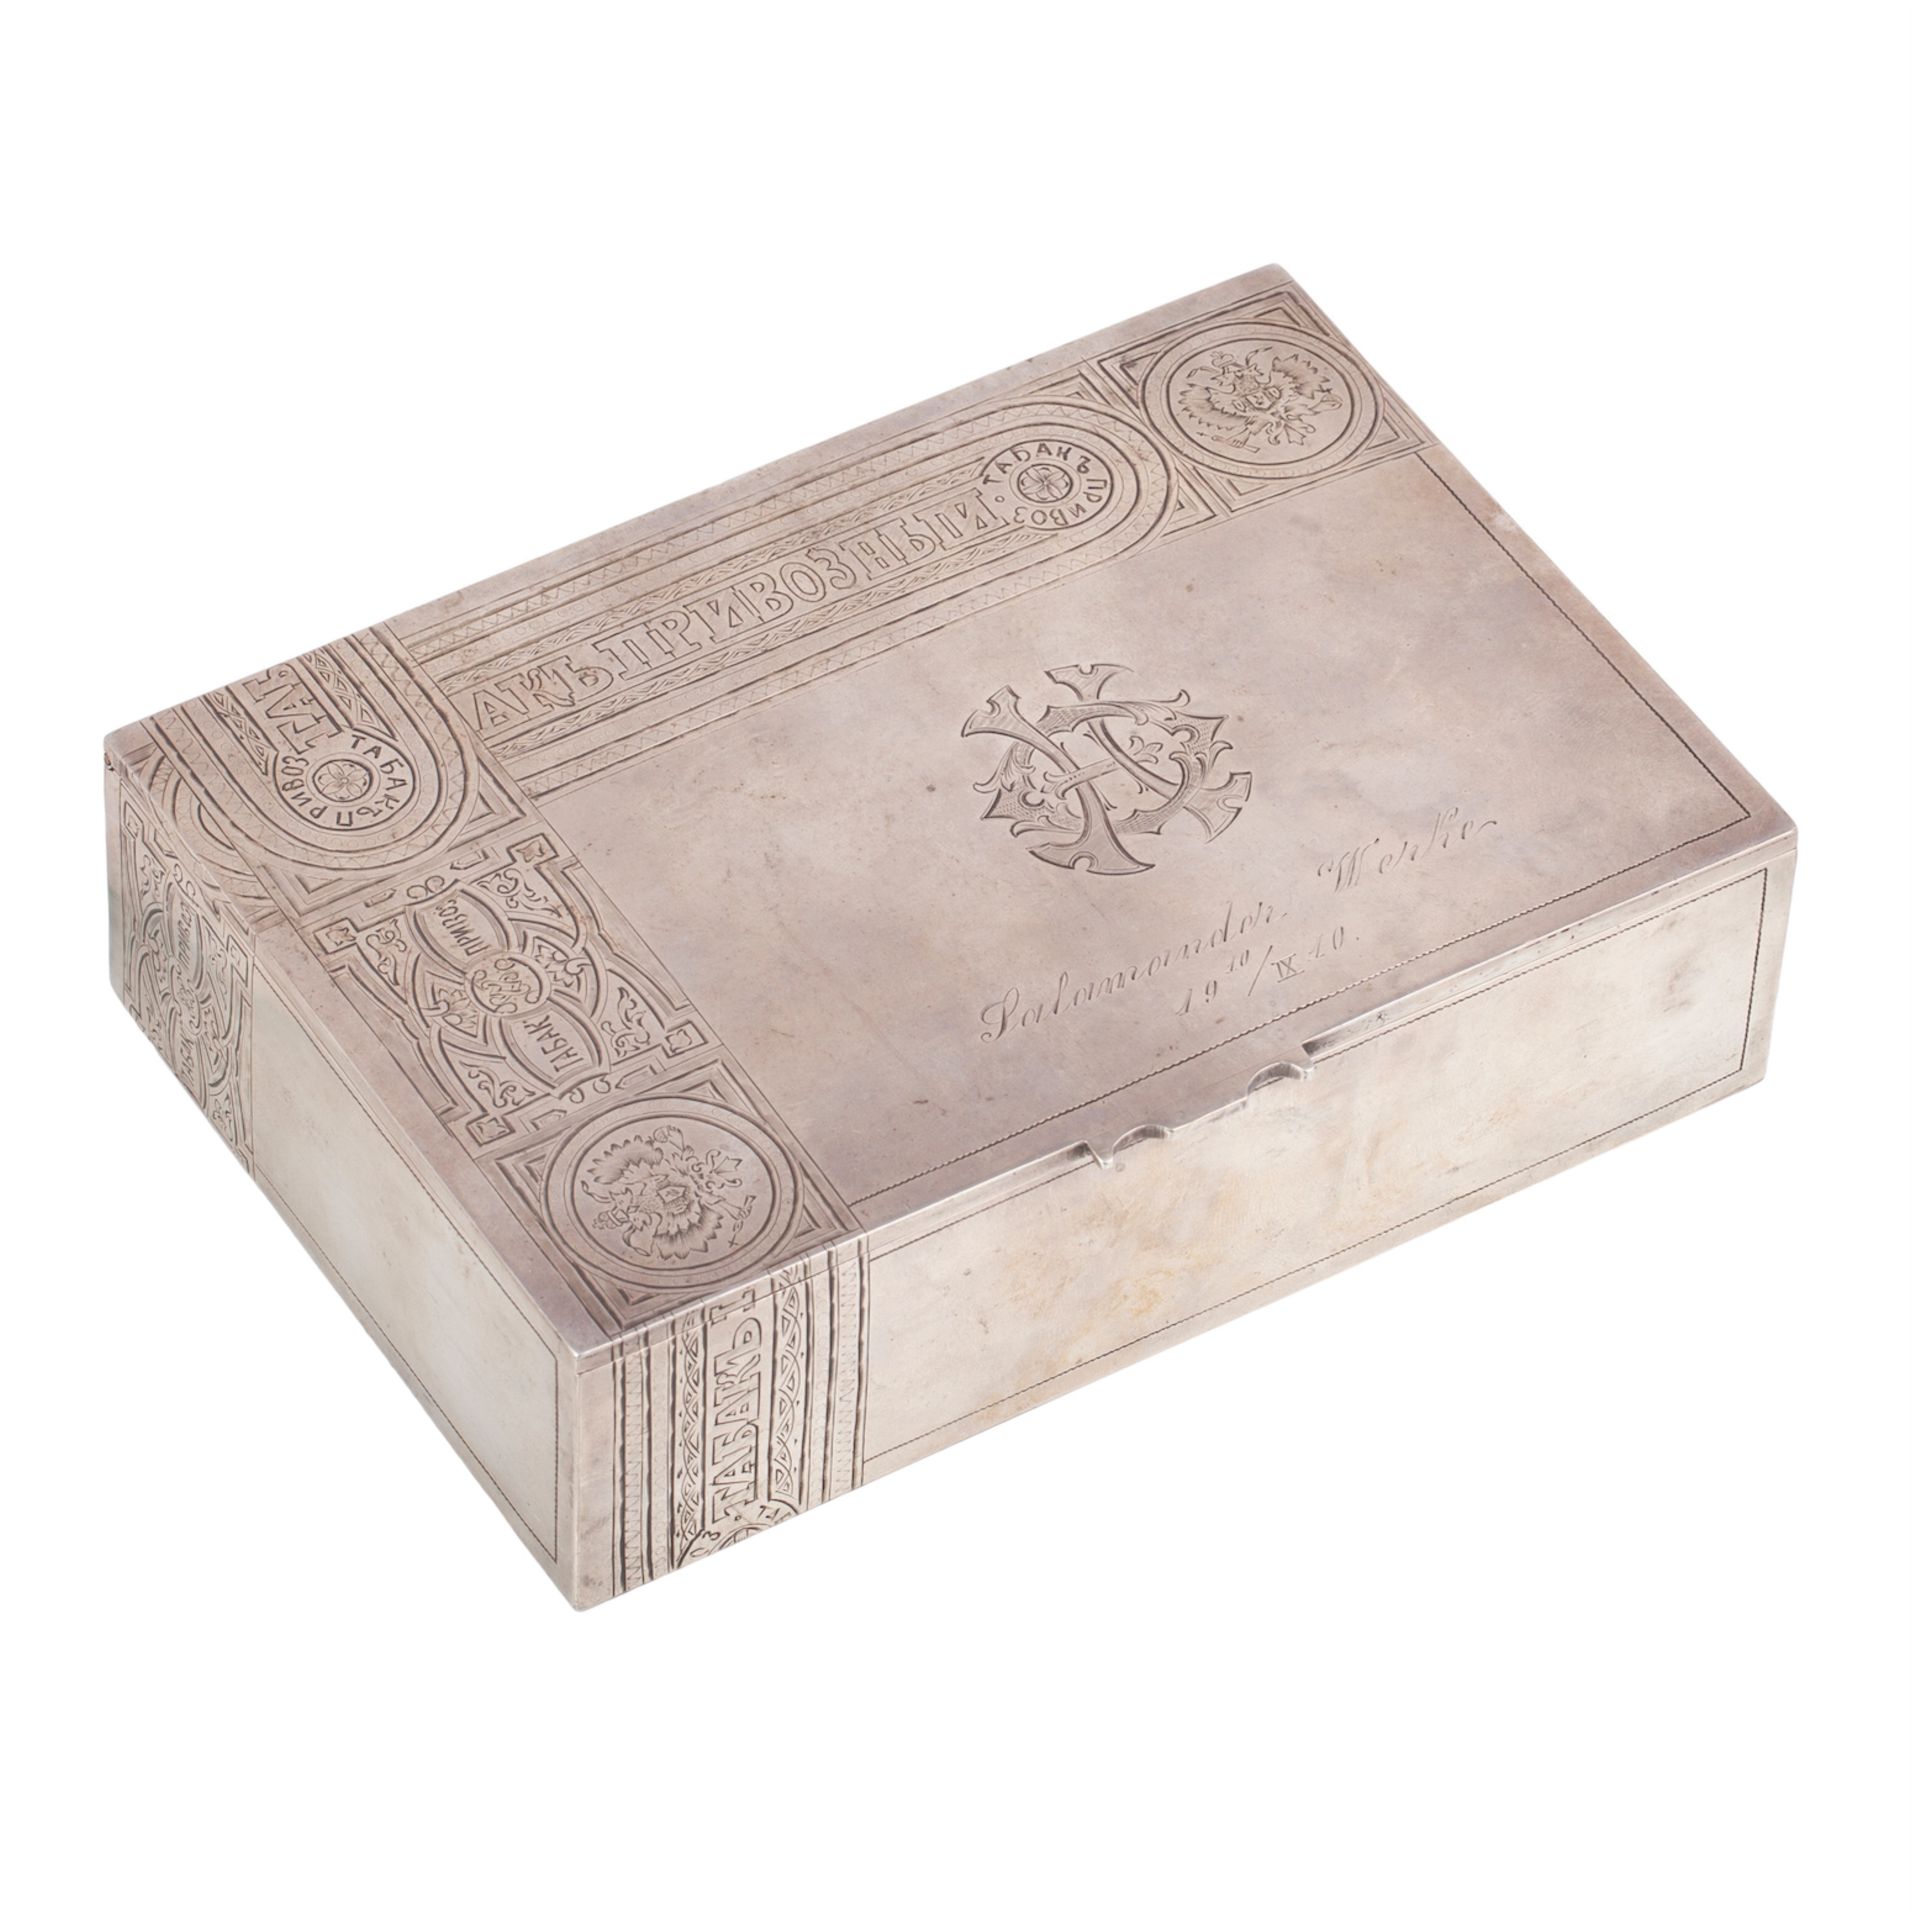 Null 带有广告雕刻的雪茄盒。银，雕刻，镀金。莫斯科，1908-1917。尺寸：17.3 x 12.2 x 4.6厘米。重量：566克。